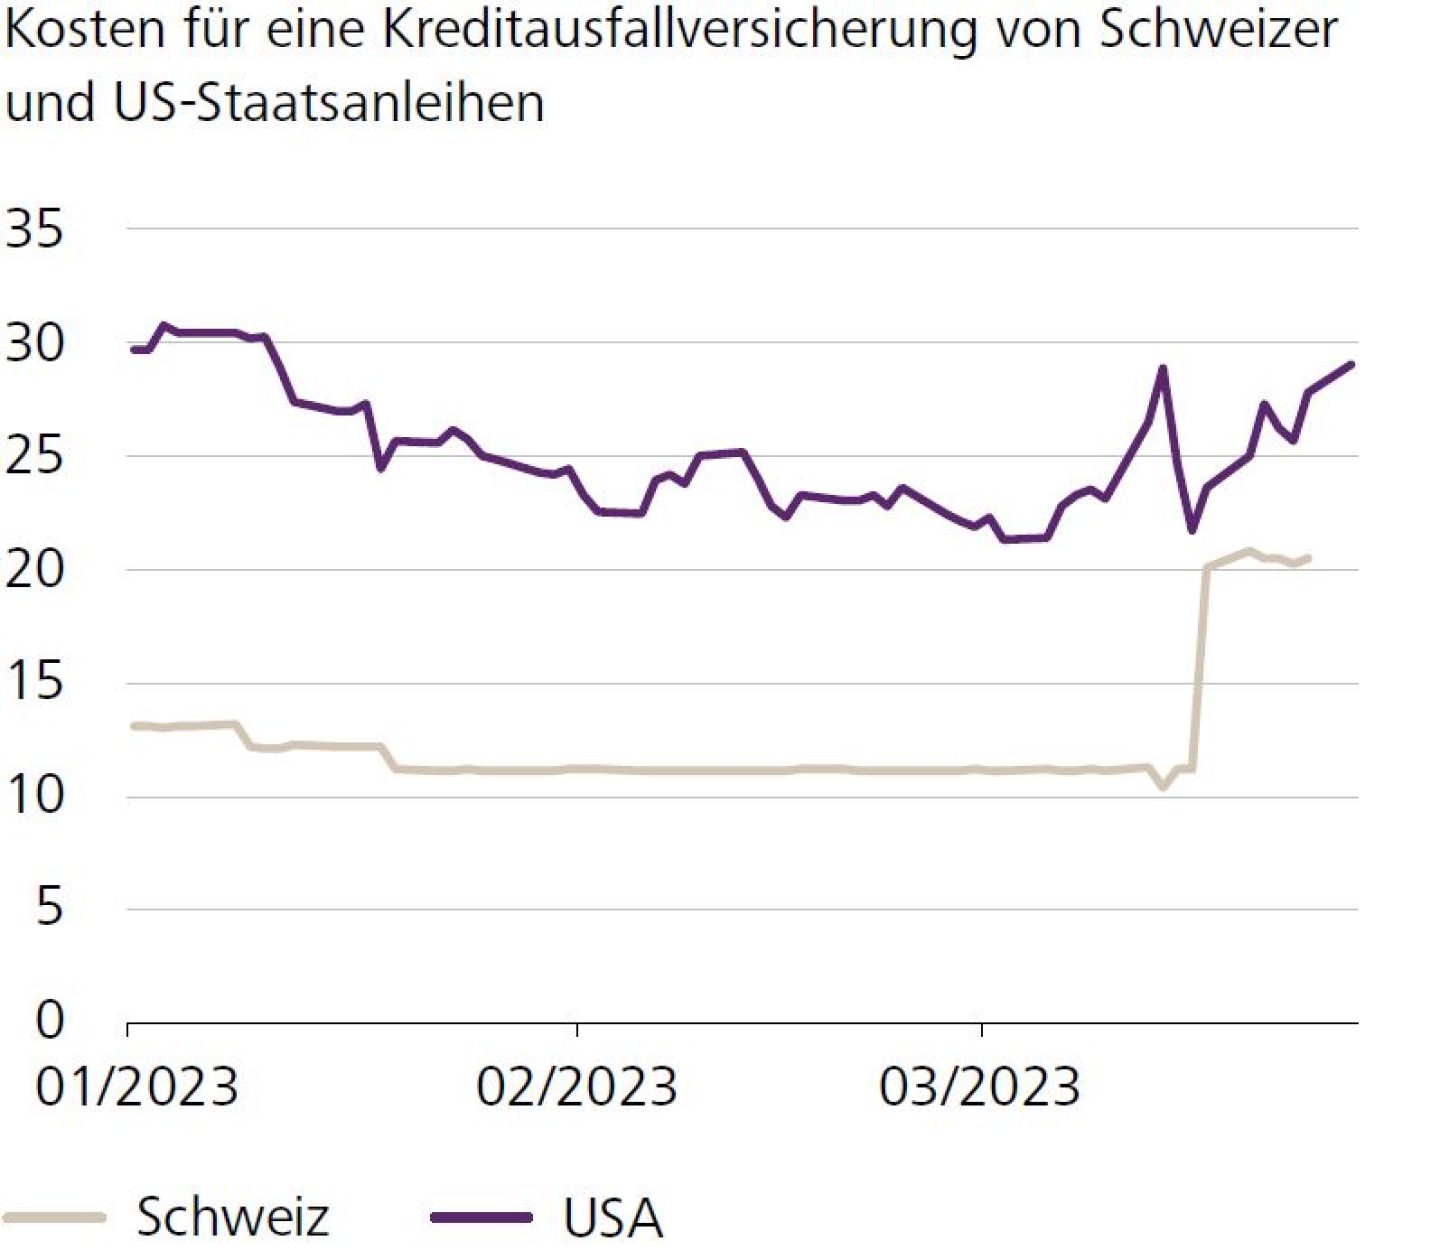 Kosten für eine Kreditausfallversicherung von Schweizer und US-Staatsanleihen